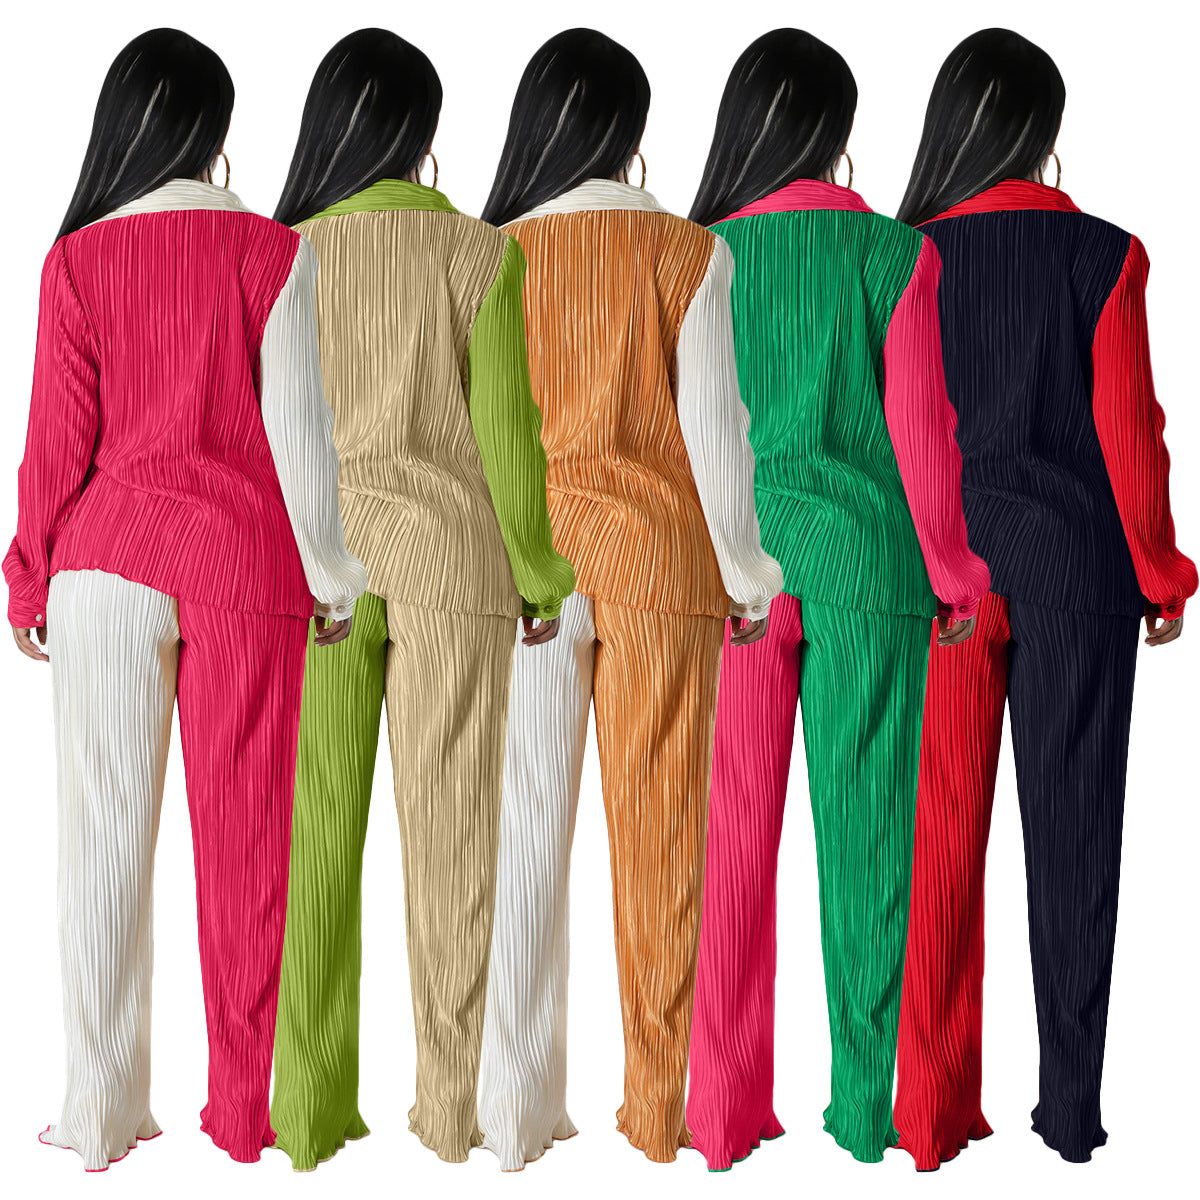 BamBam Women Fall Colorblock Loose Shirt and Pants Casual Two-piece Set - BamBam